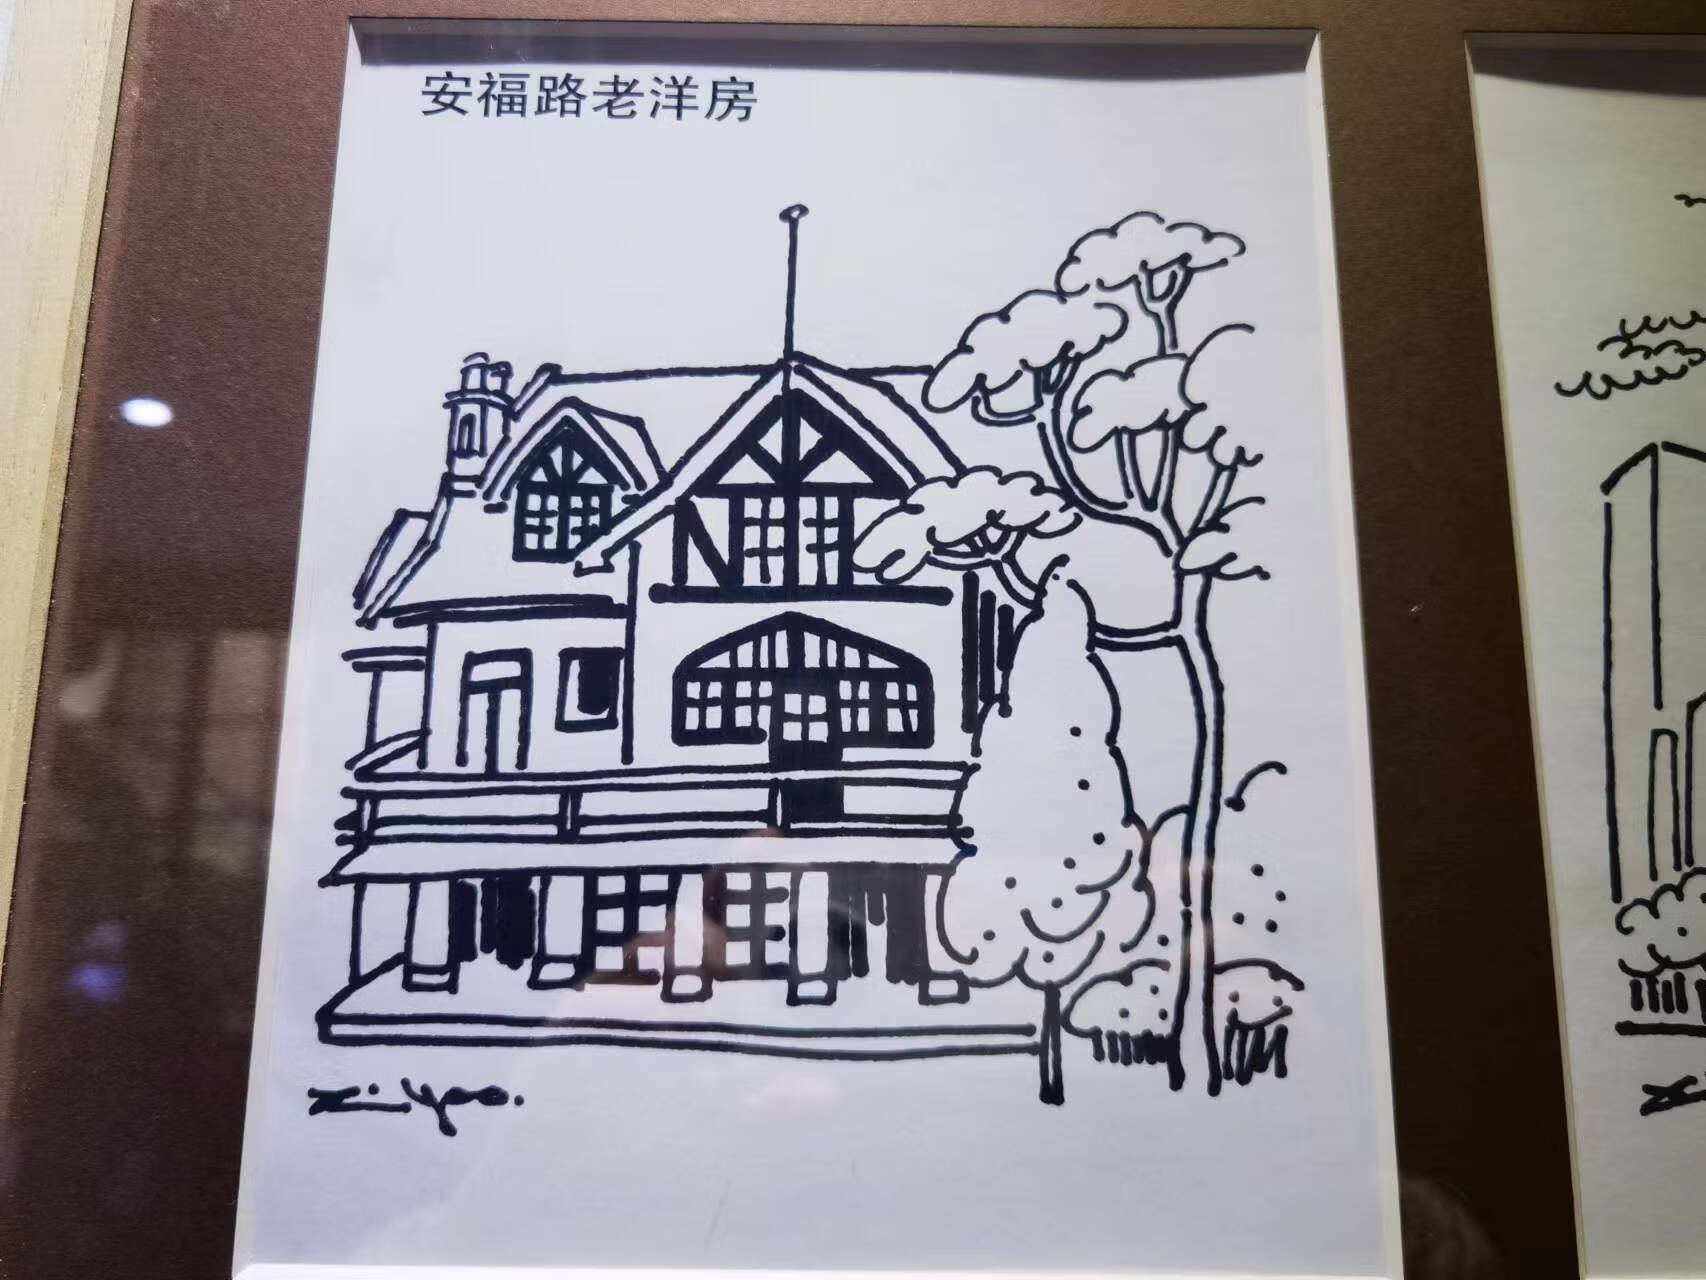 以漫画的视角重新阅读建筑，“老房子遇上漫画家”特展在邬达克纪念馆开幕